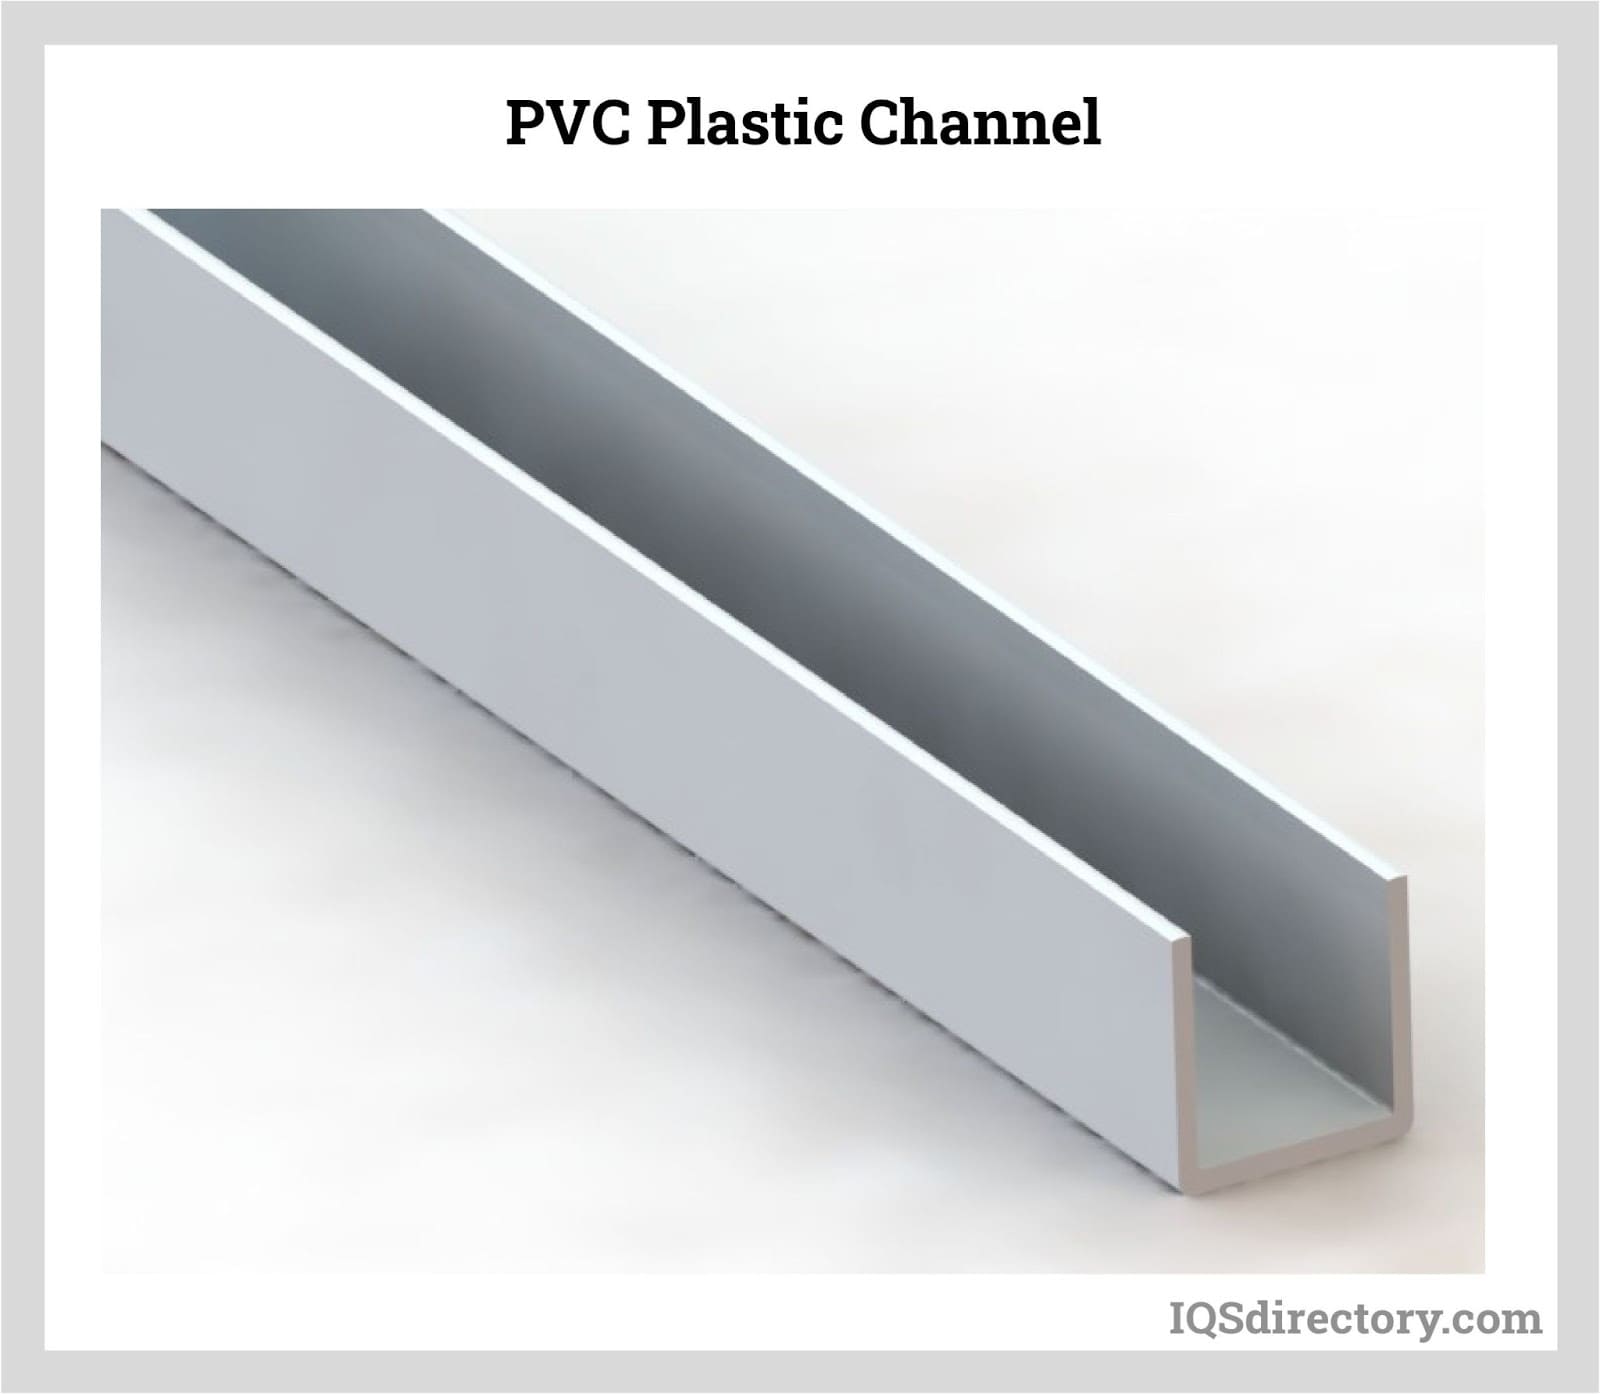 PVC Plastic Channel